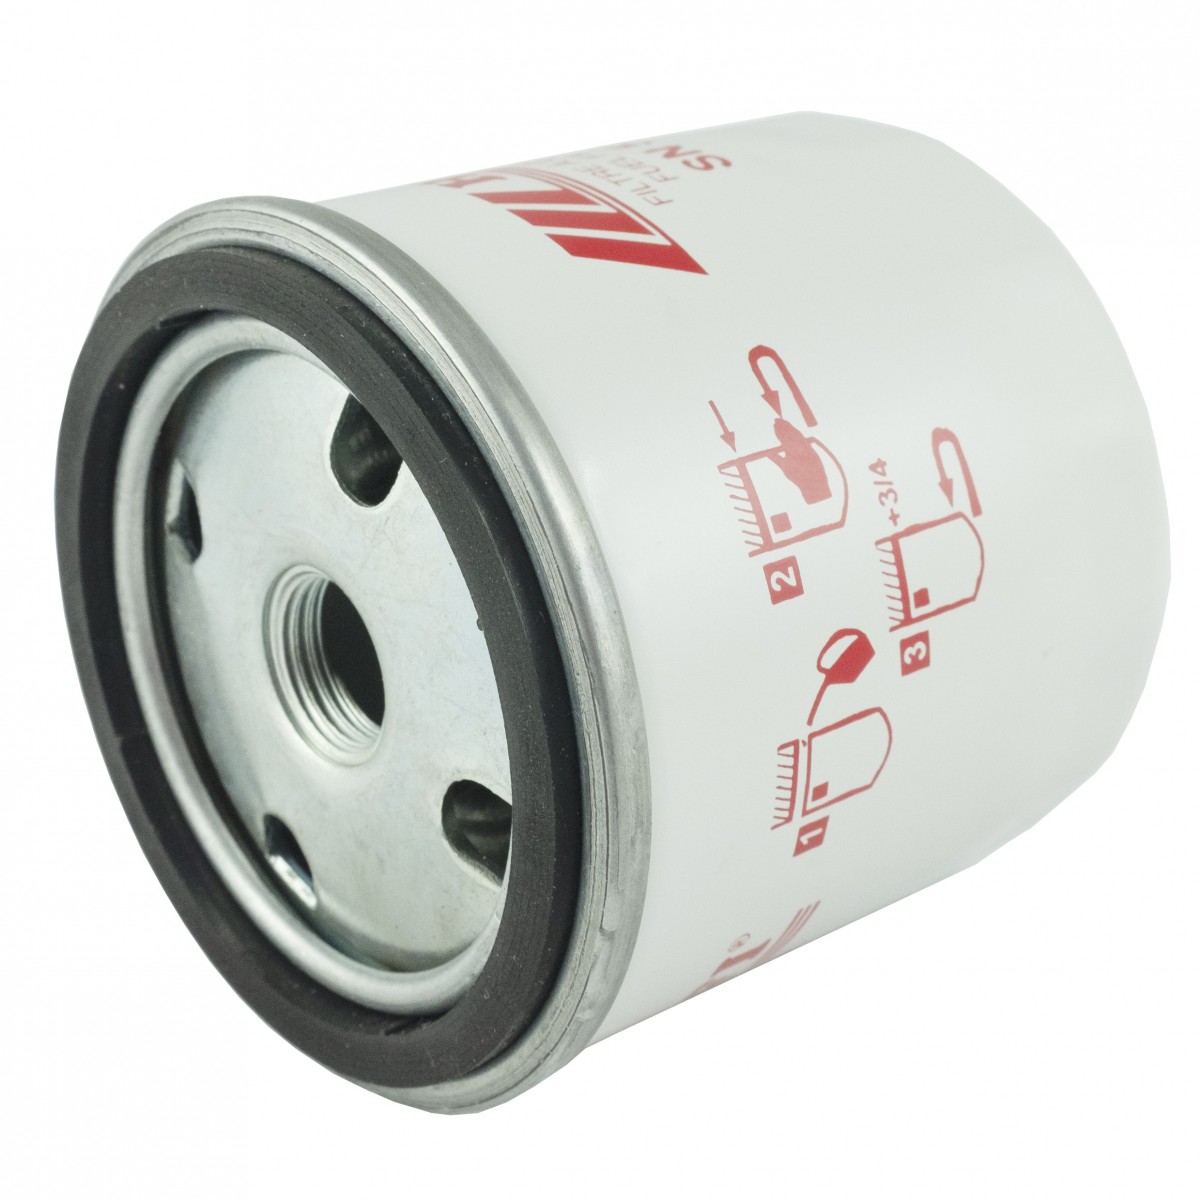 Fuel filter M16x1.5, 75 x 78 mm, Lombardinni, Deutz